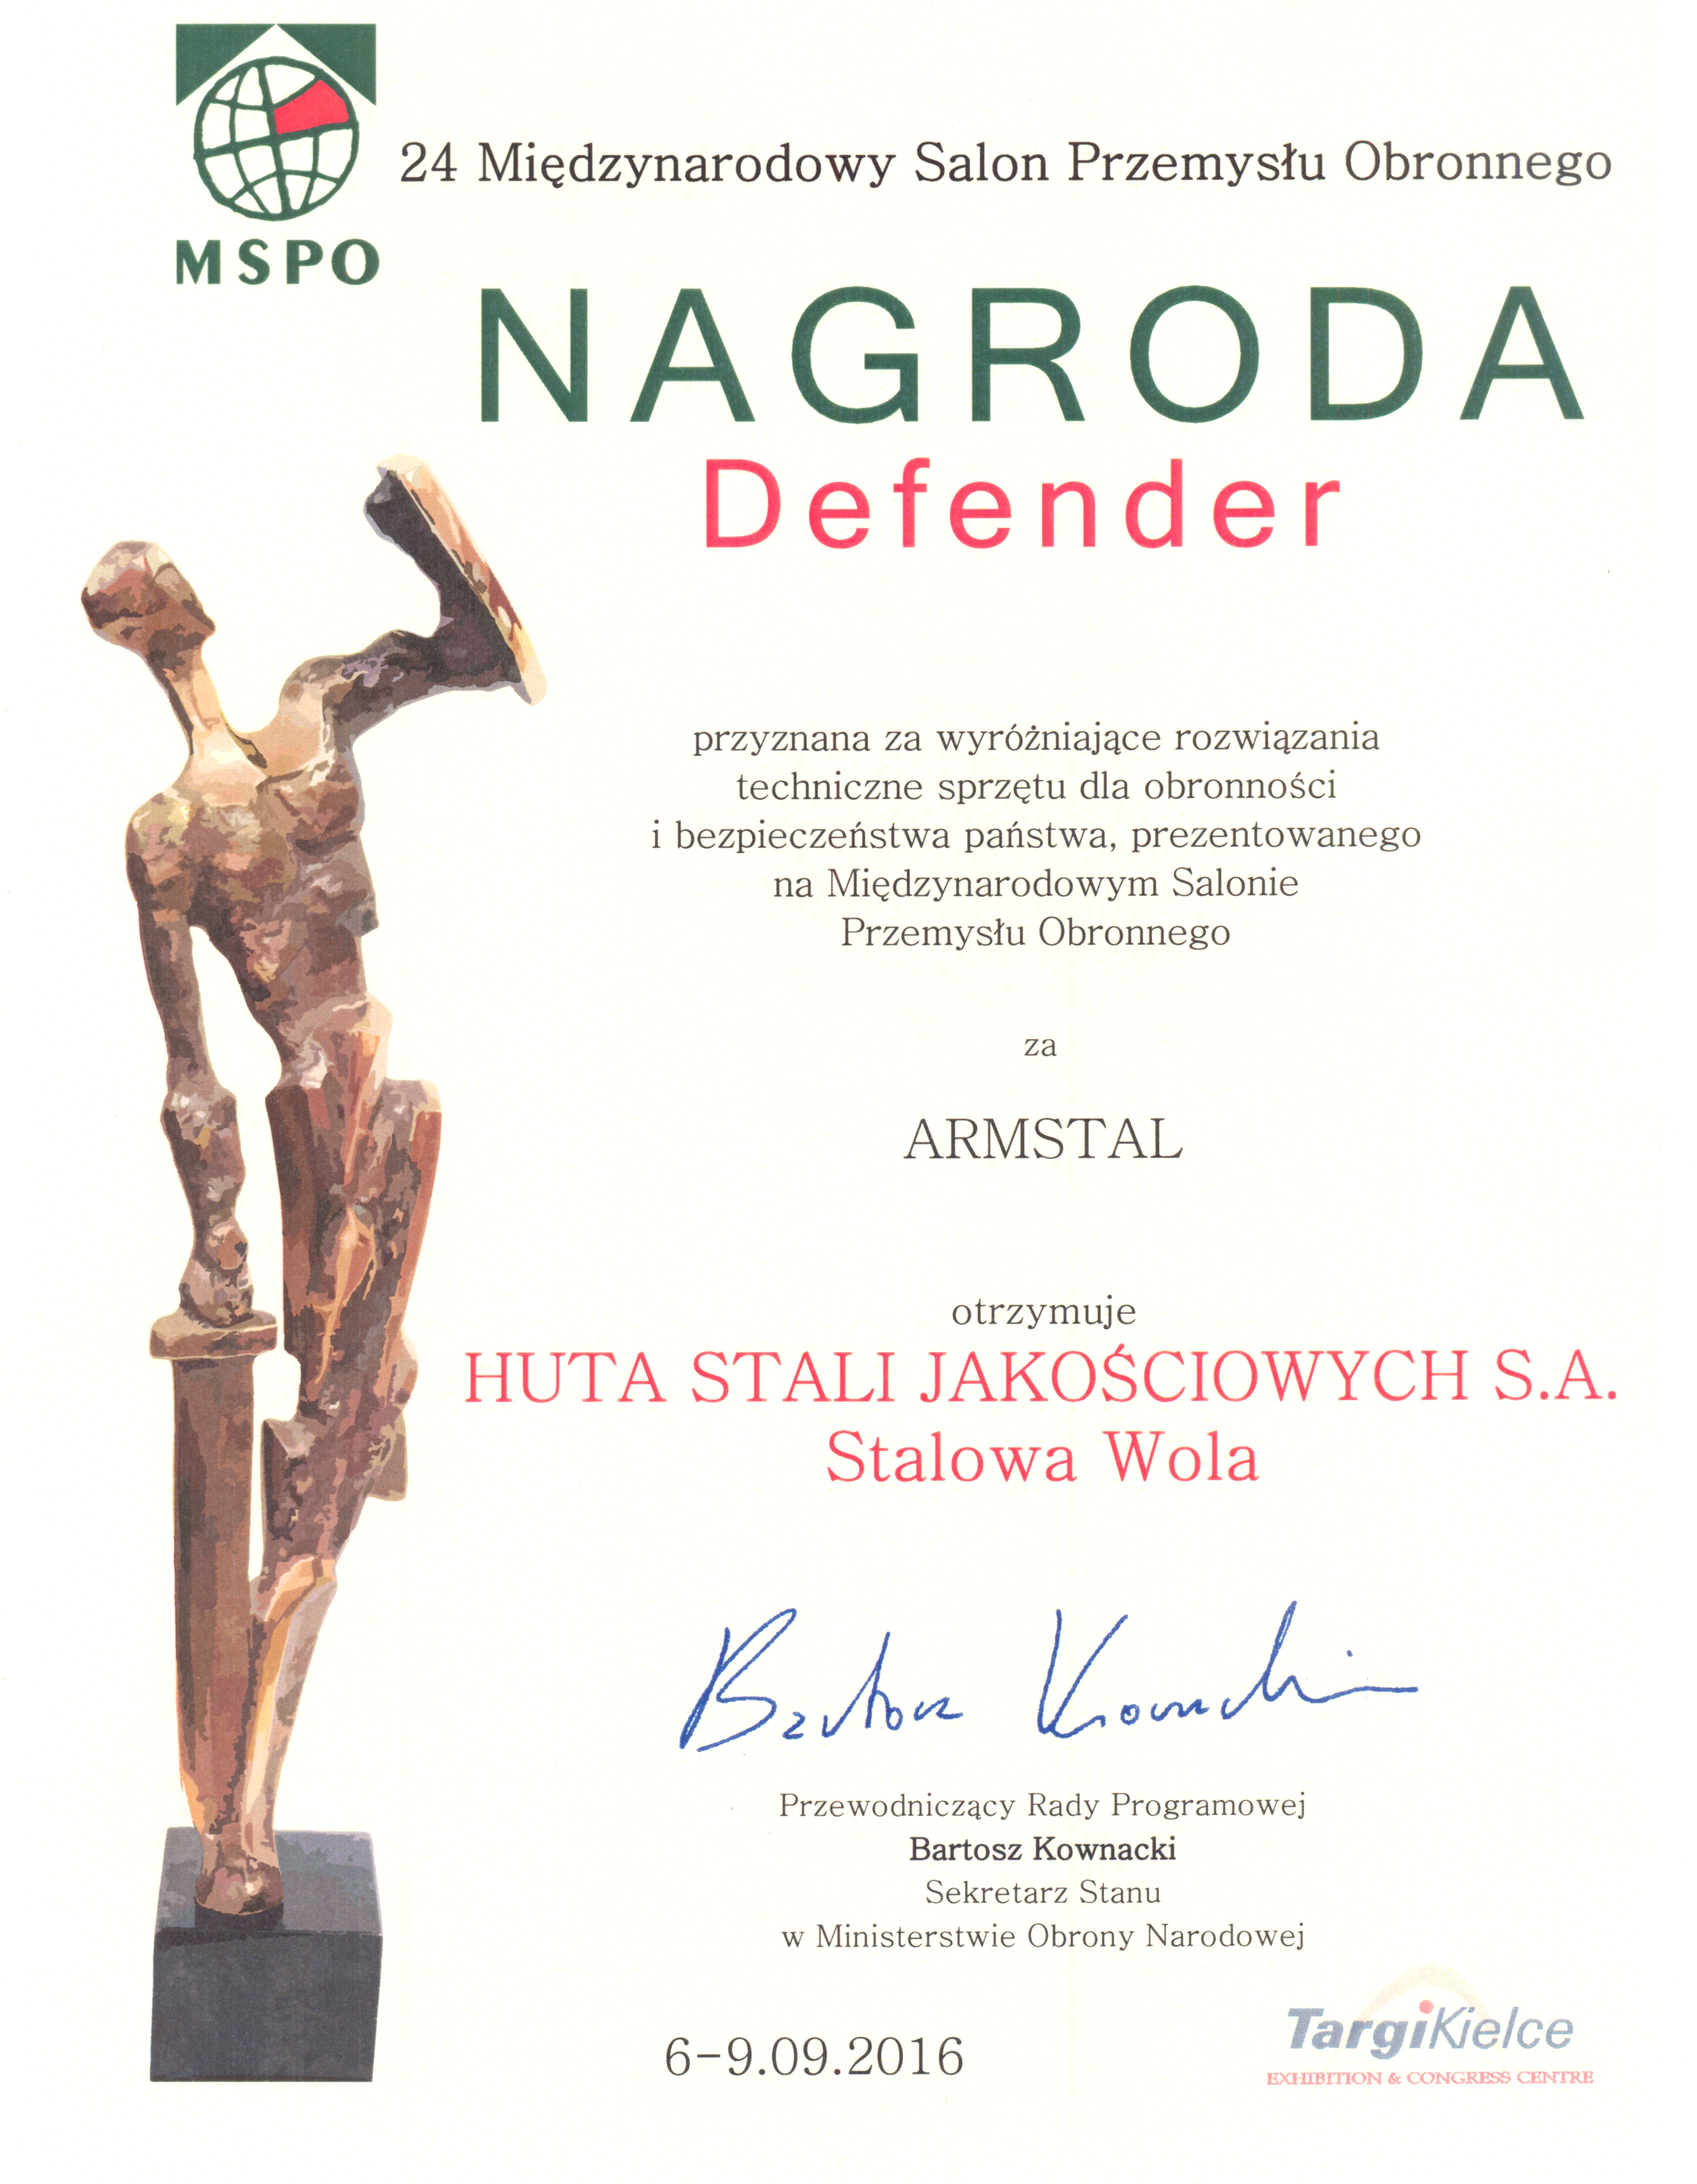 Nagroda DEFENDER